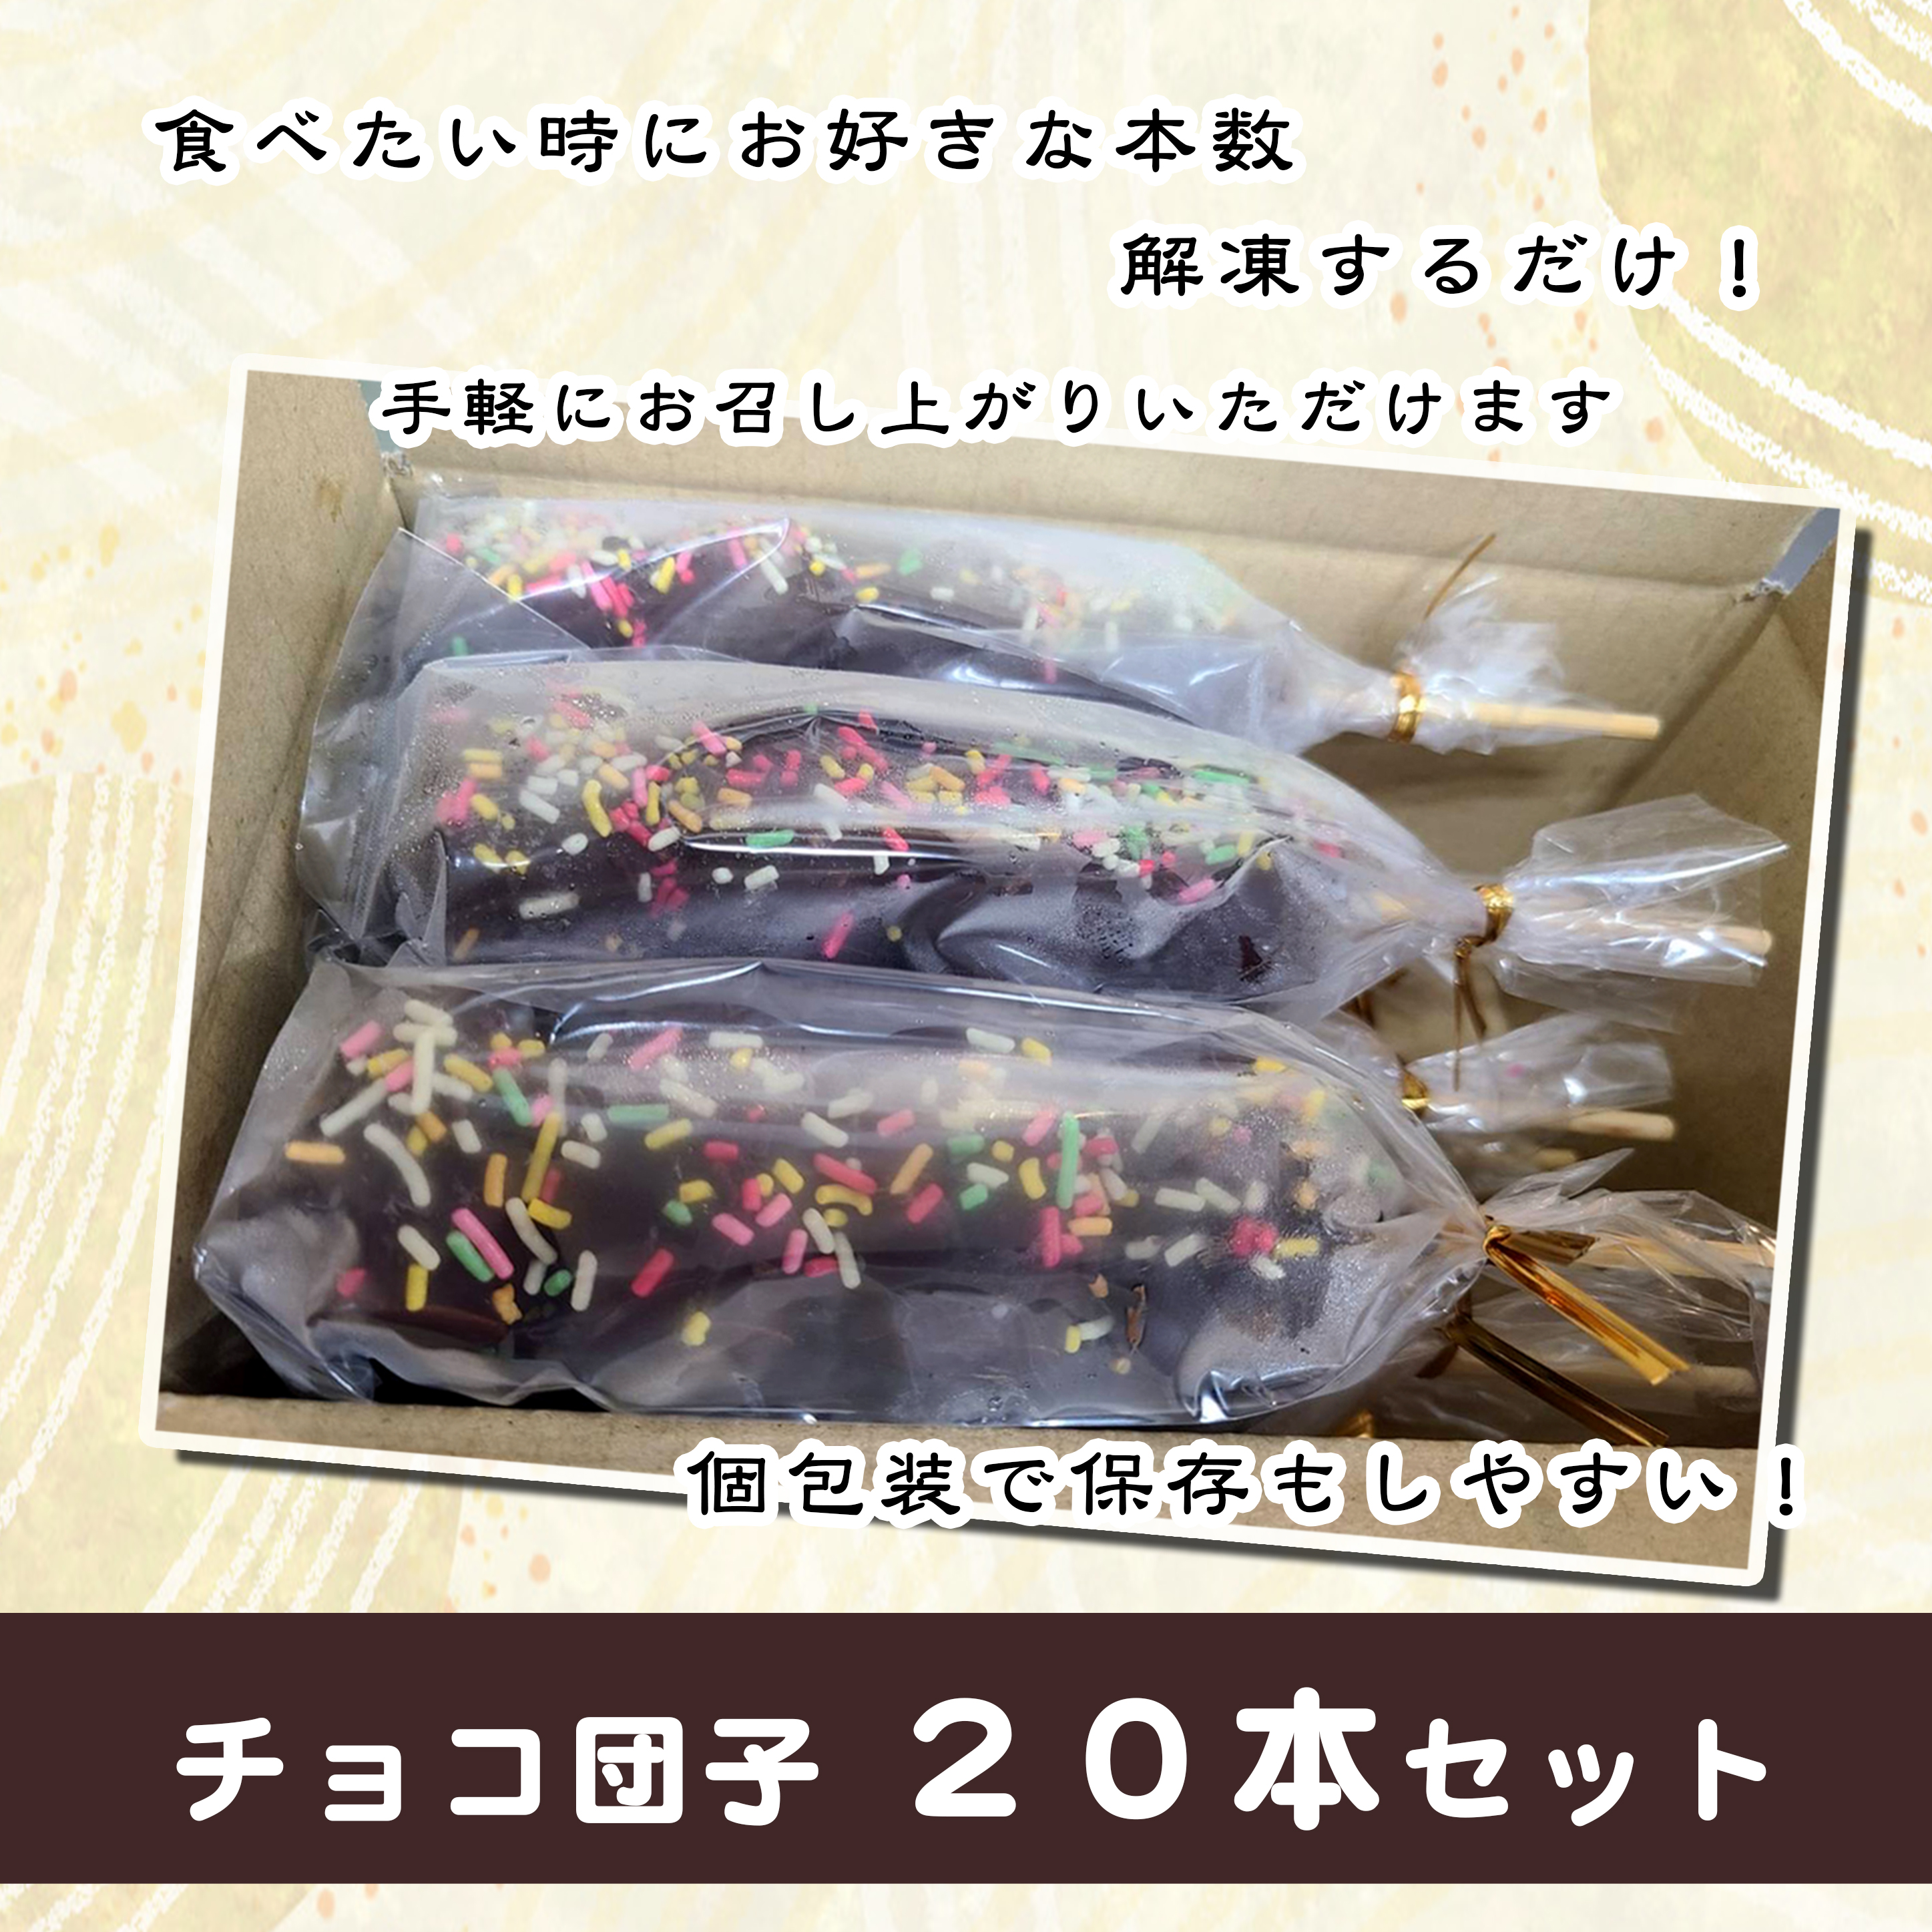 ジャンボチョコ団子20本セット(冷凍)・F024-23